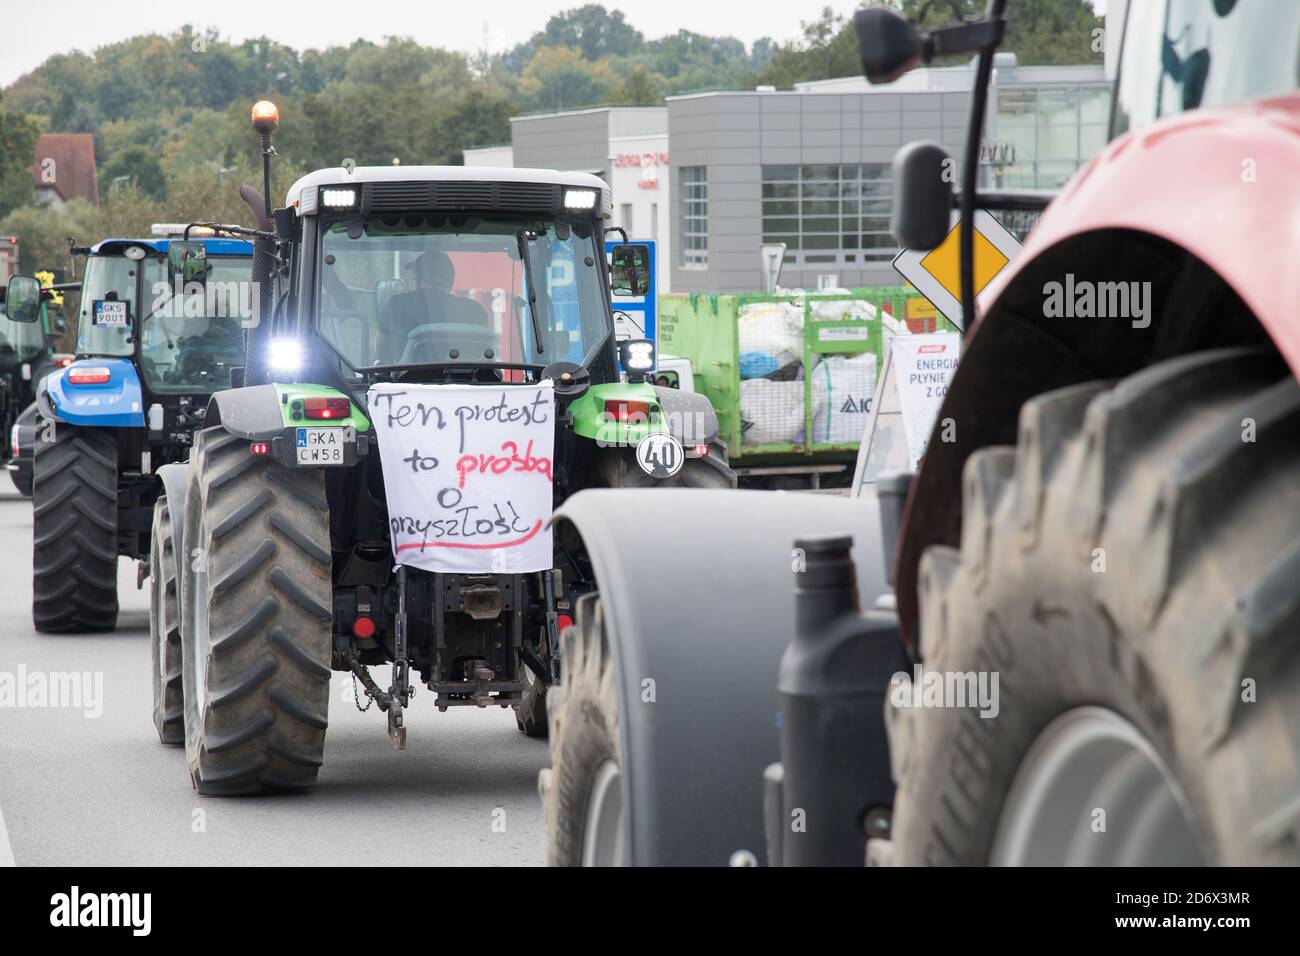 Polnische Bauern protestieren gegen die Gesetze, die Pelzfarmen, religiöse Schlachtung für den Export und die Verwendung von Tieren für Enterta verbieten würden Stockfoto